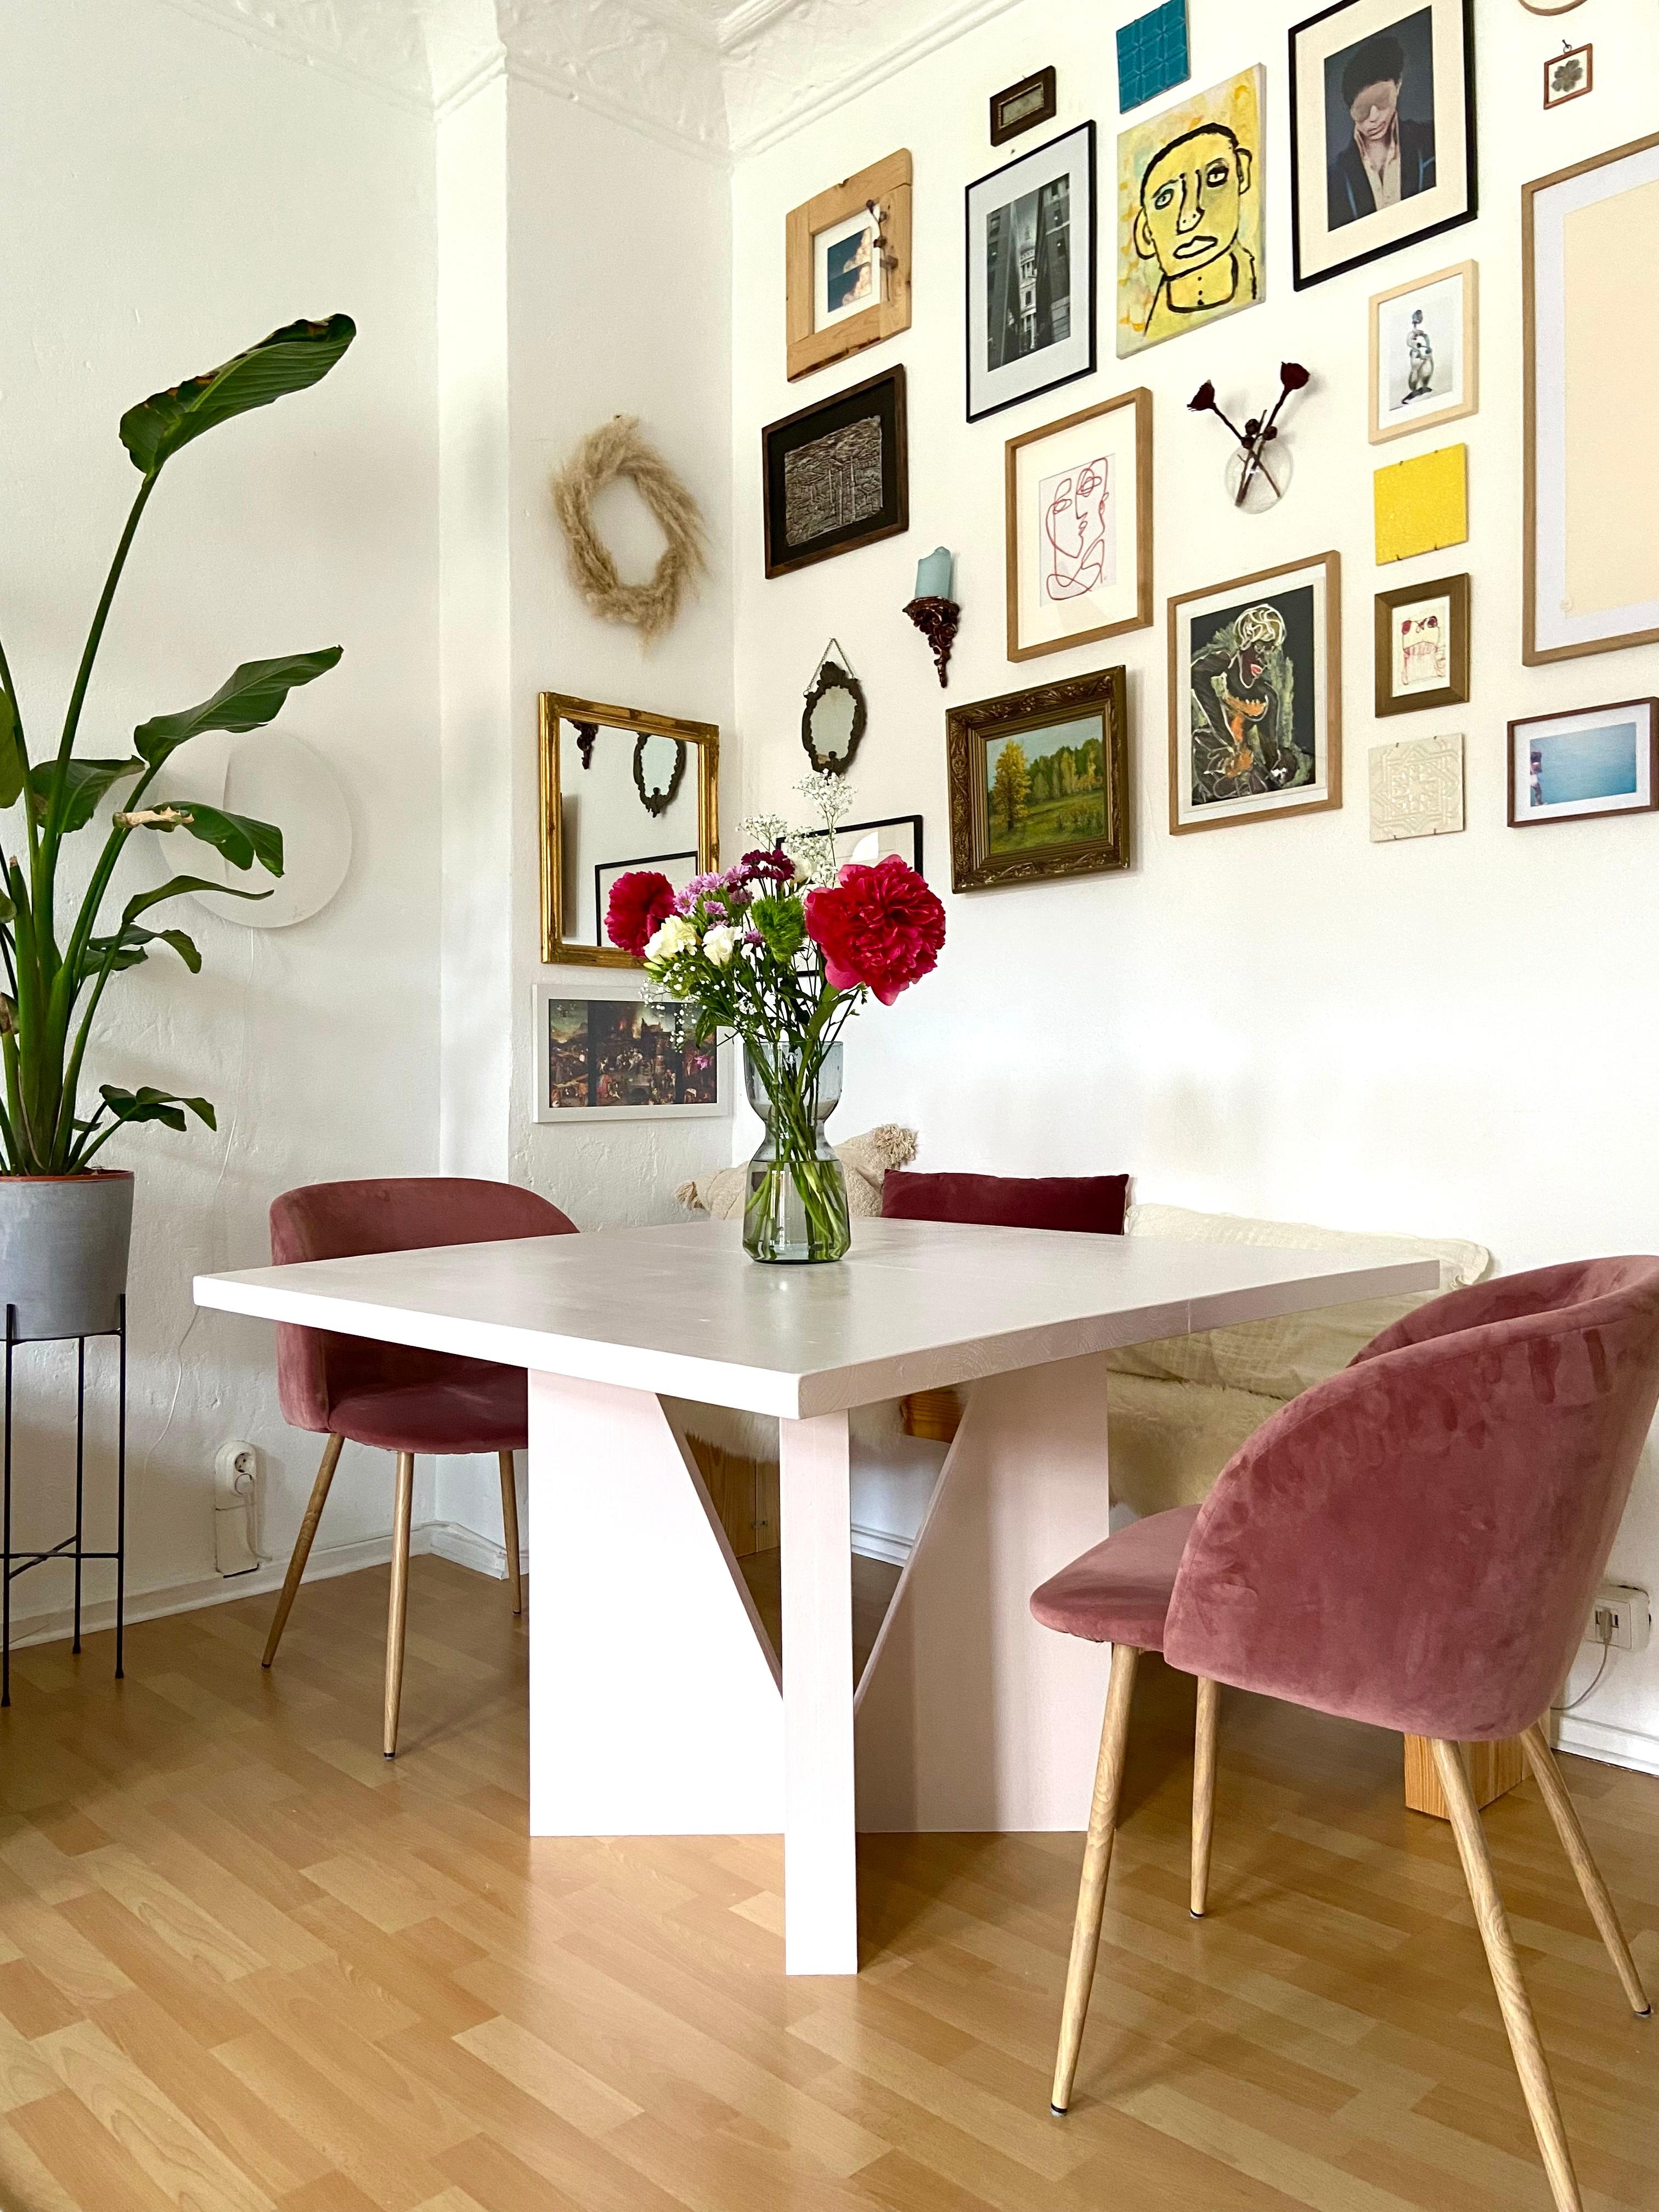 DIY-Tisch erfolgreich in den #lieblingsraum eingefügt! :)
#livingchallenge #wohnzimmer #livingroom #esstisch #diy 